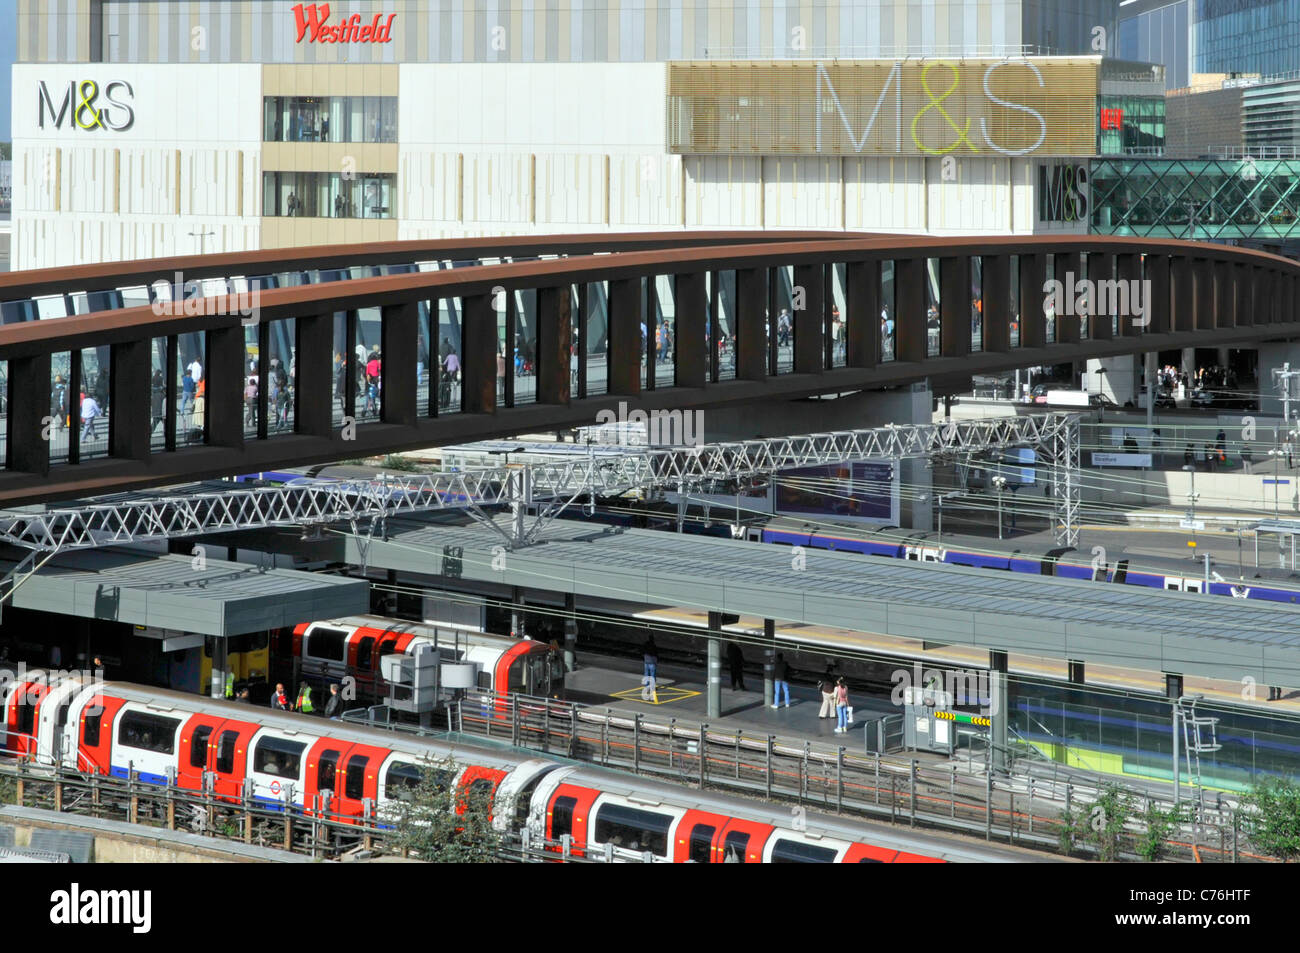 Pont d'entrée du centre commercial Westfield et train avec vue aérienne À la gare de Stratford, panneau M&S sur Marks and Spencer Building East London Royaume-Uni Banque D'Images